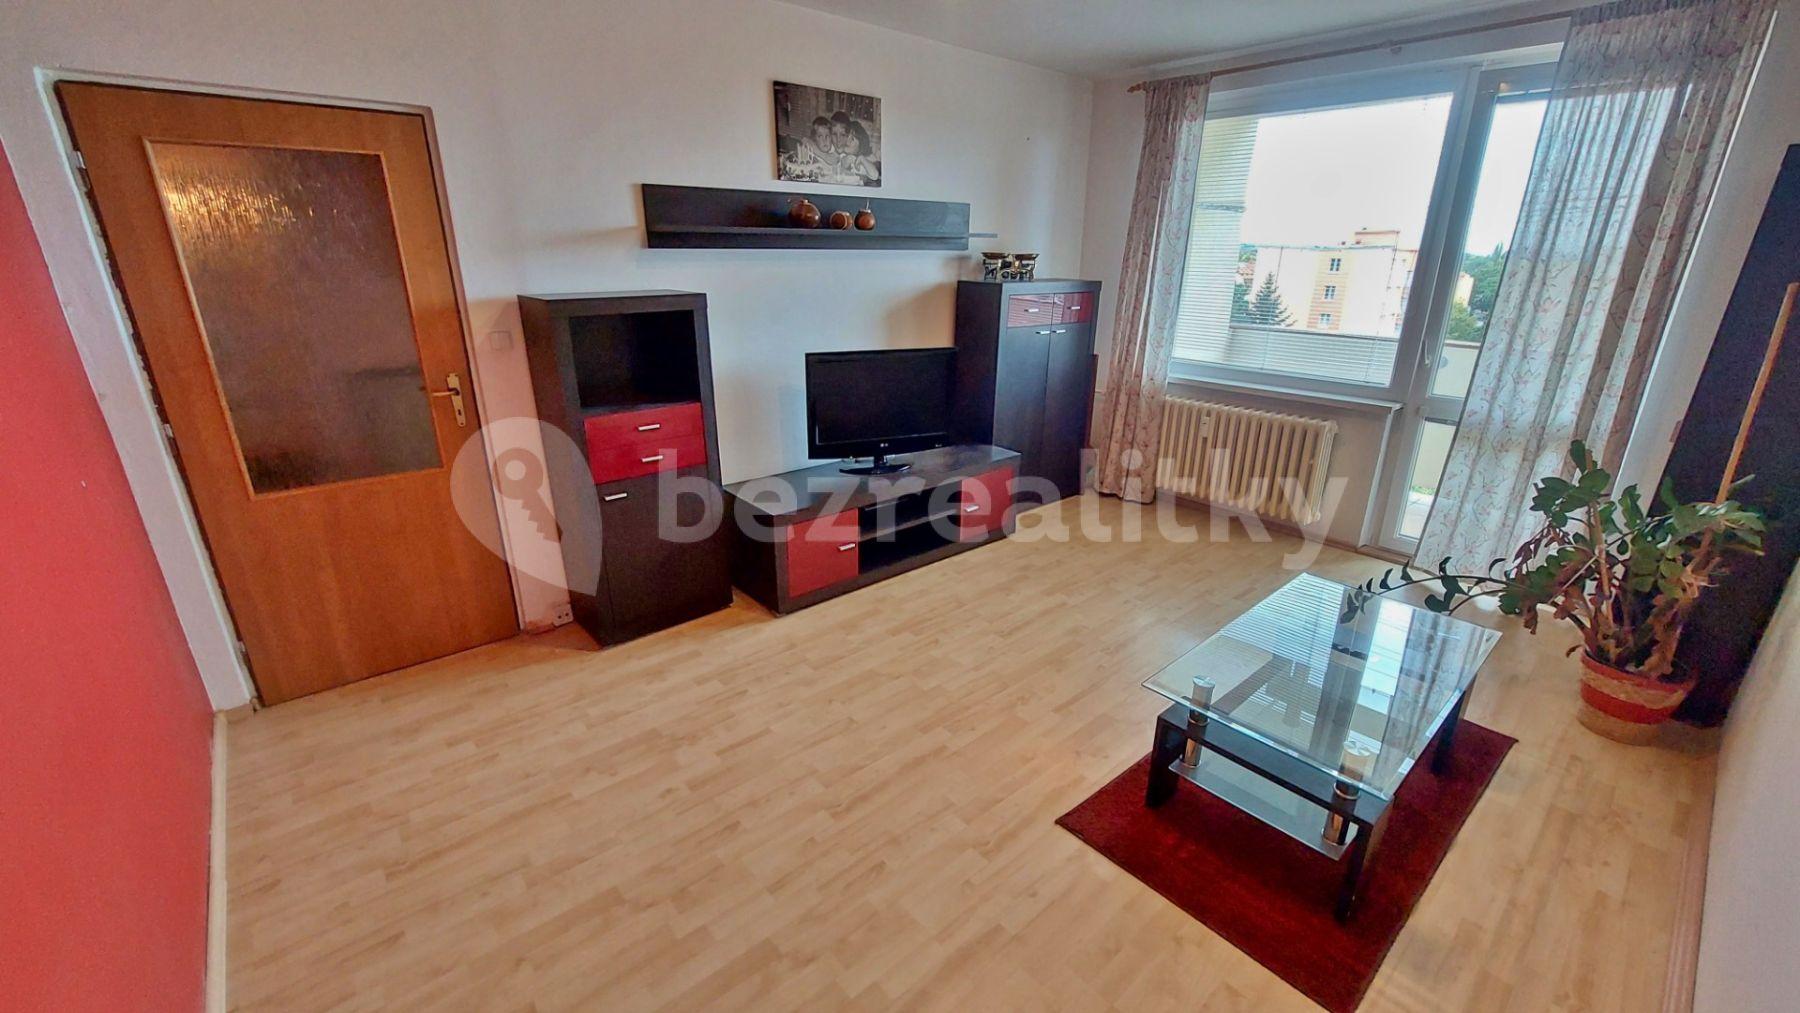 3 bedroom flat for sale, 80 m², Šafaříkova, Žatec, Ústecký Region